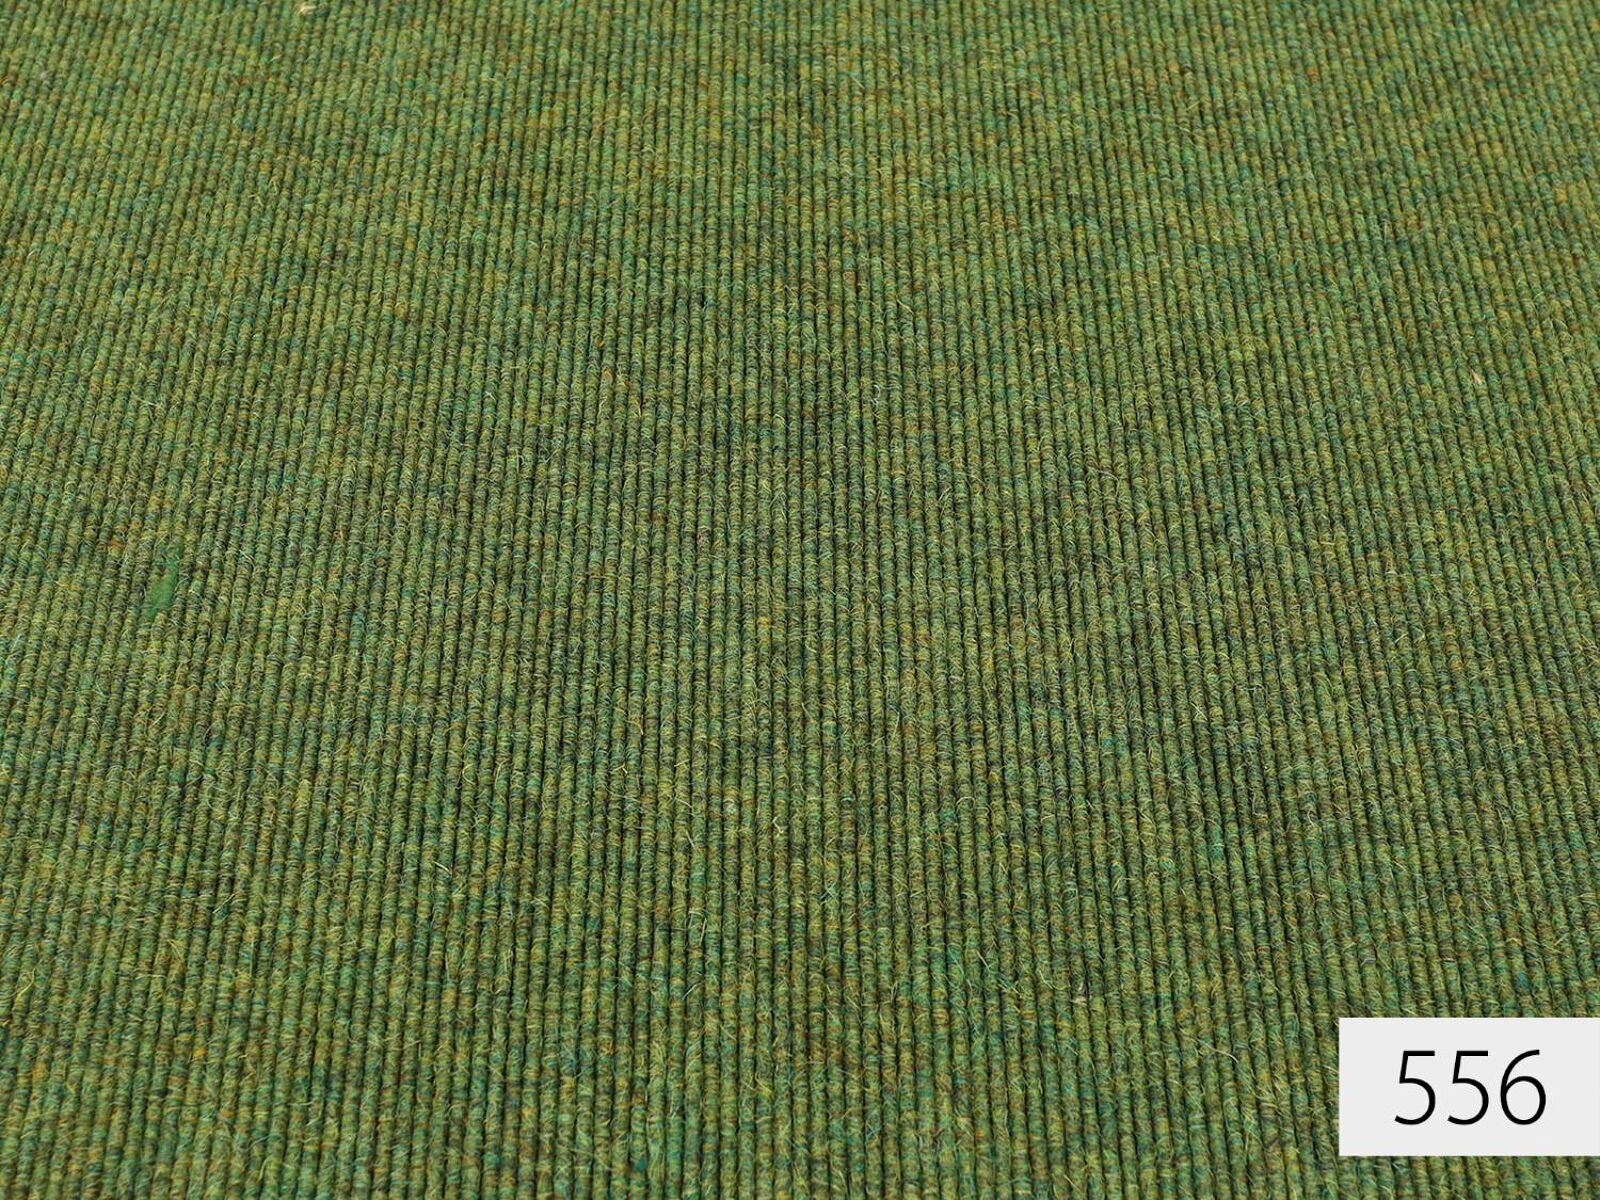 tretford Interland Teppichboden|80% Ziegenhaar 20% Wolle| 200cm Breite